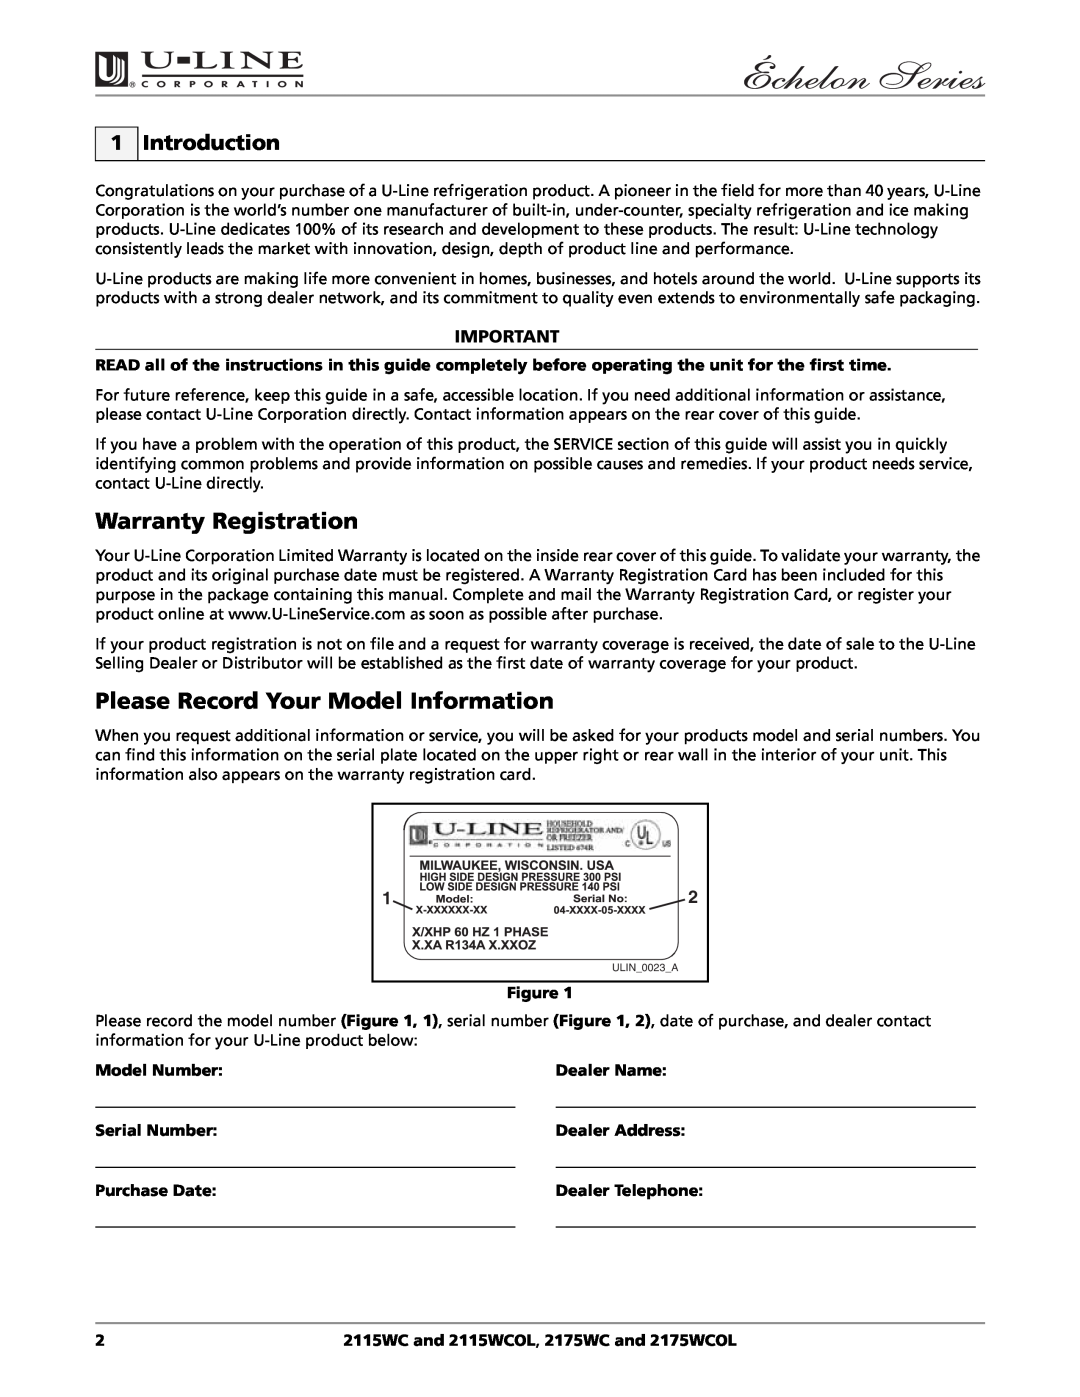 U-Line 2115WC manual Warranty Registration, Please Record Your Model Information, Introduction, Model Number, Dealer Name 